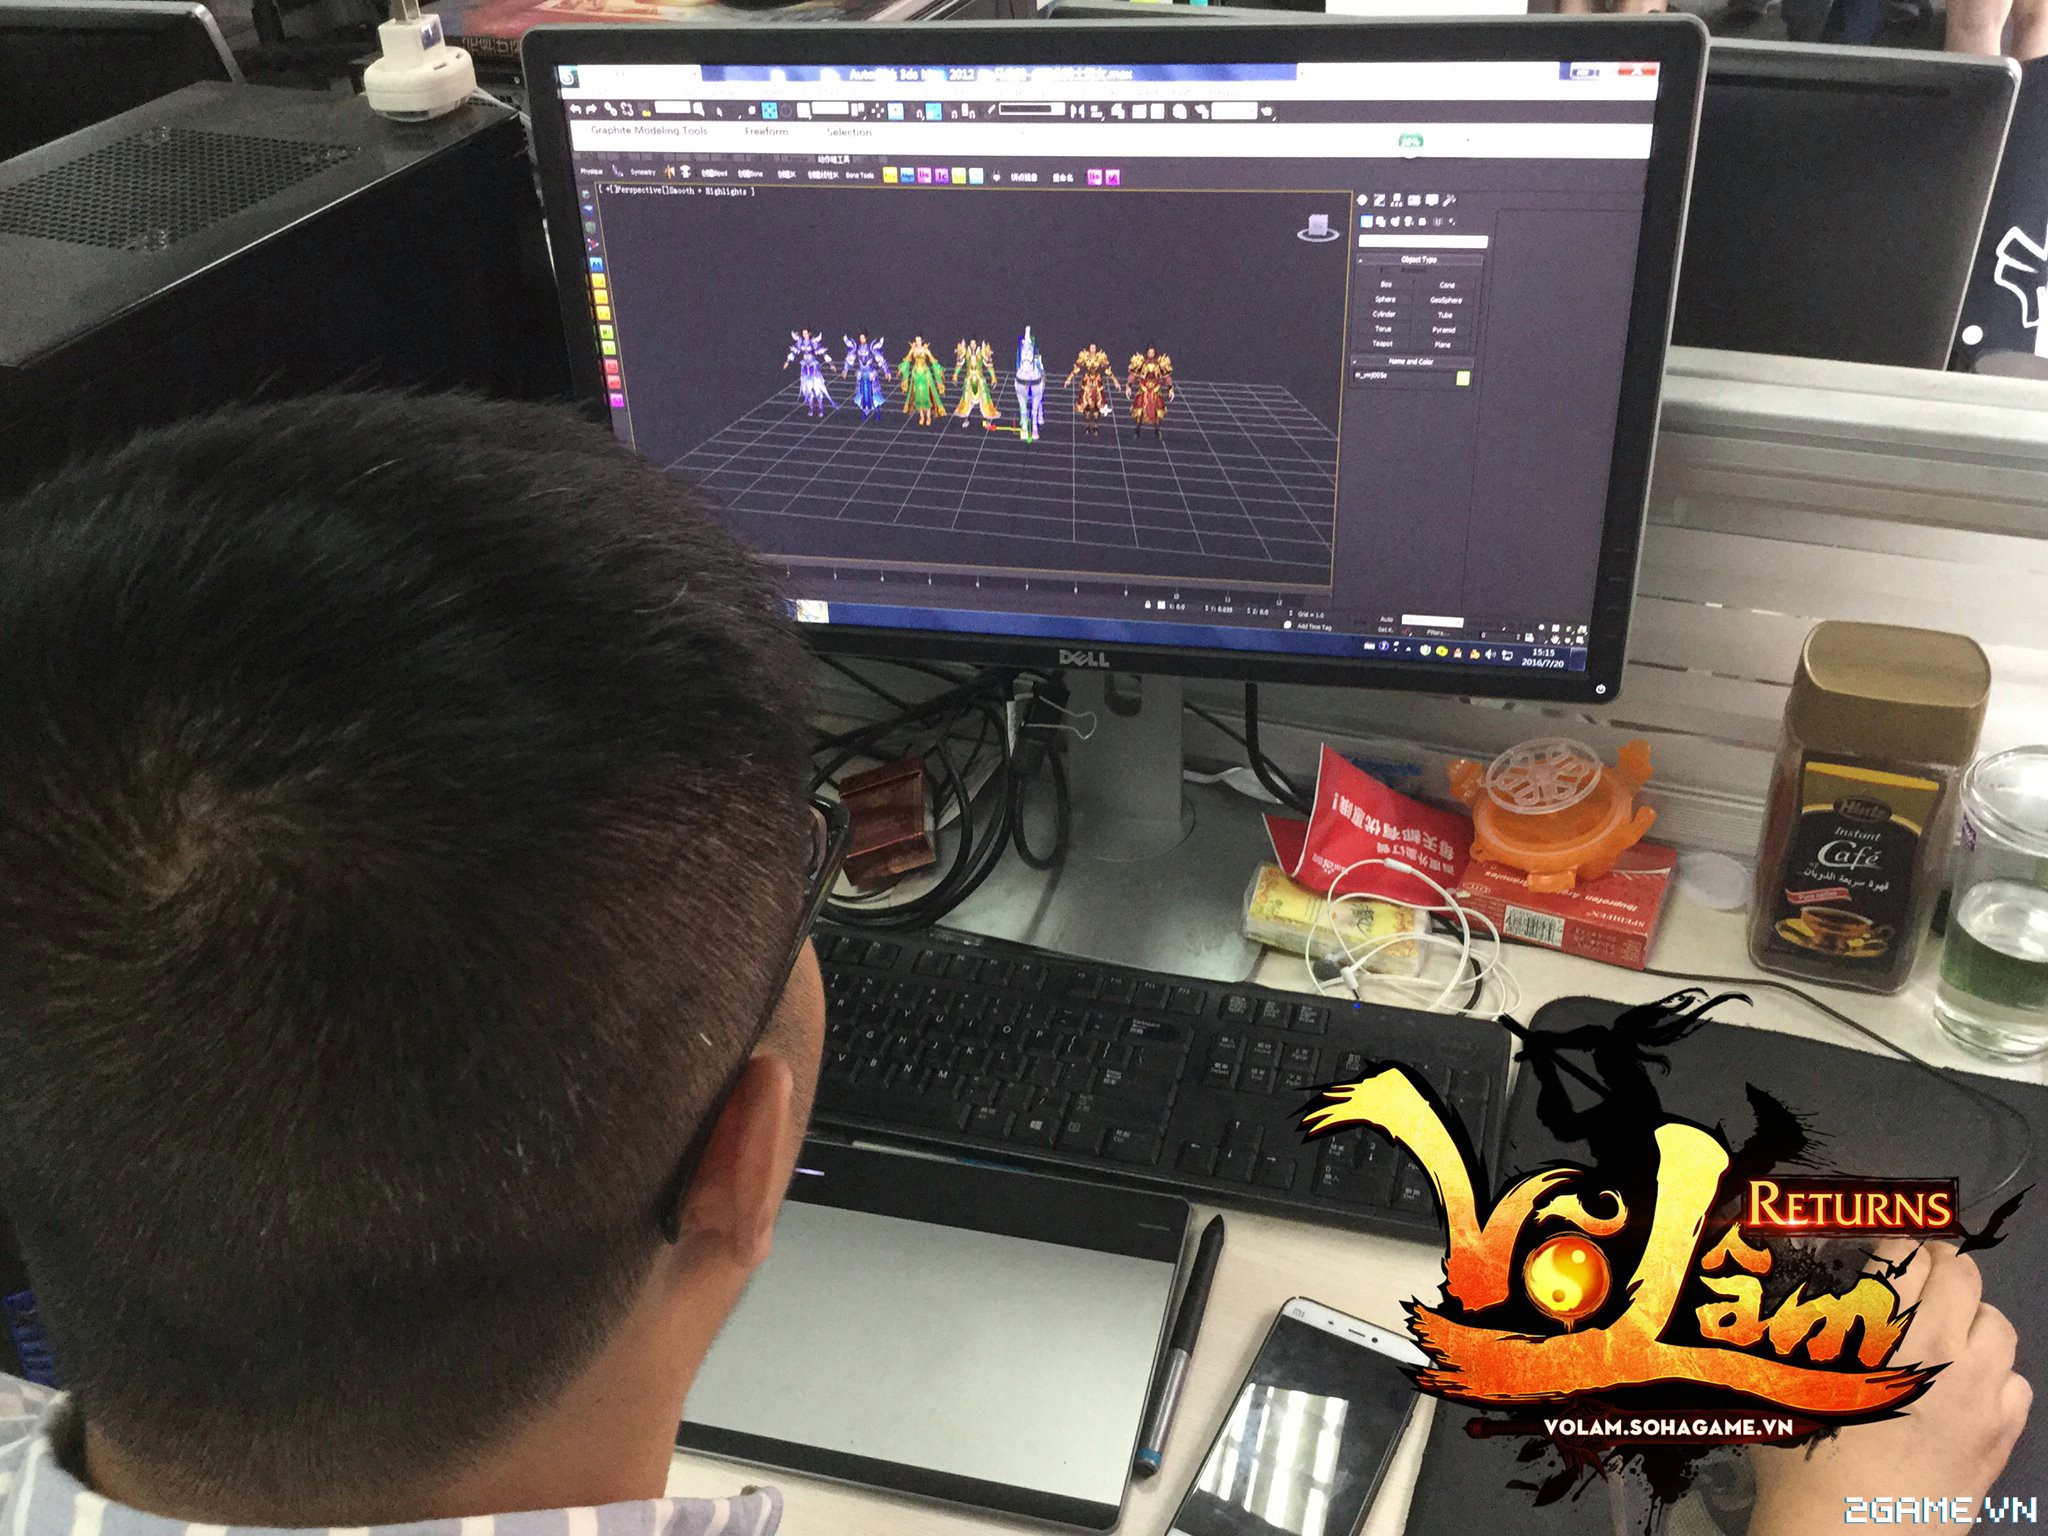 Võ Lâm Returns là dự án gMO được Soha Game đặt hàng phục vụ riêng cho fan Võ Lâm Việt Nam